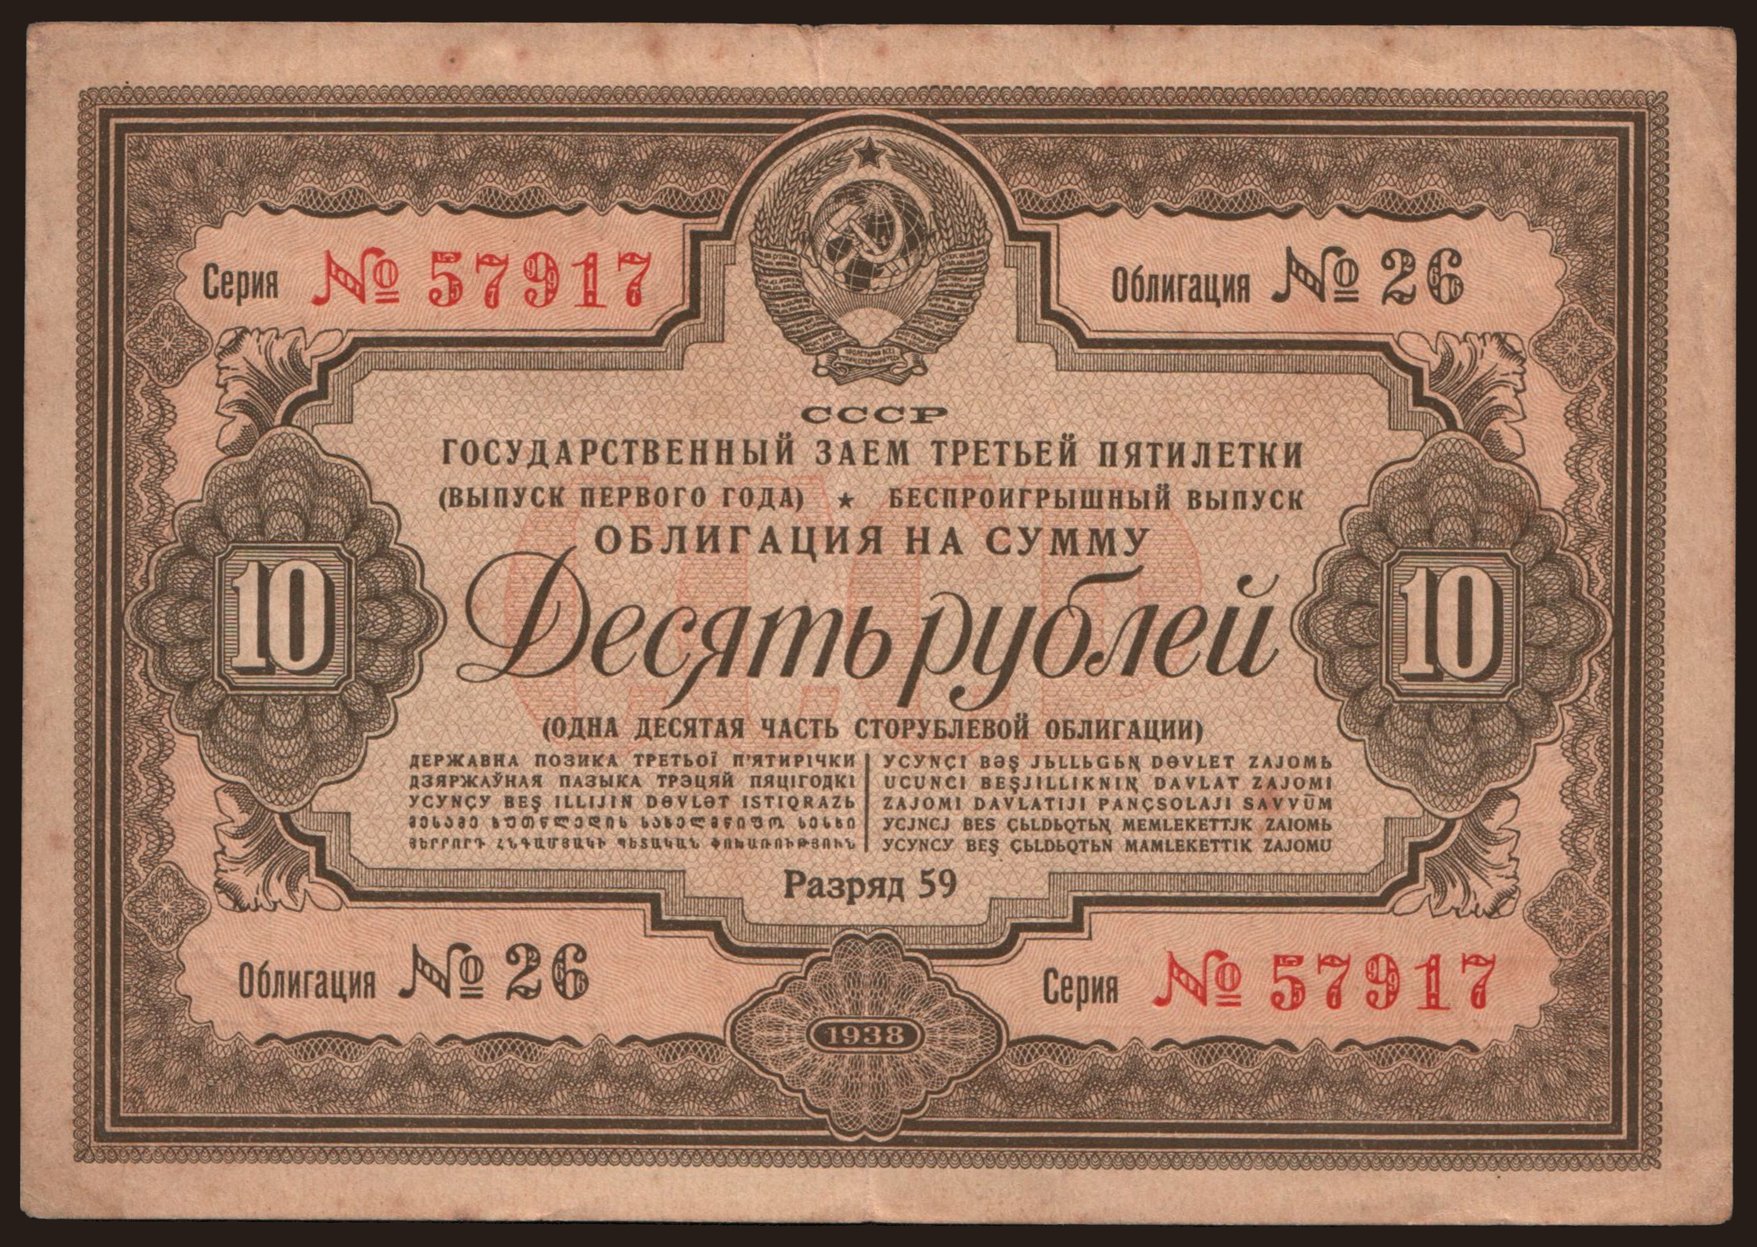 Gosudarstvennyj zaem, 10 rubel, 1938